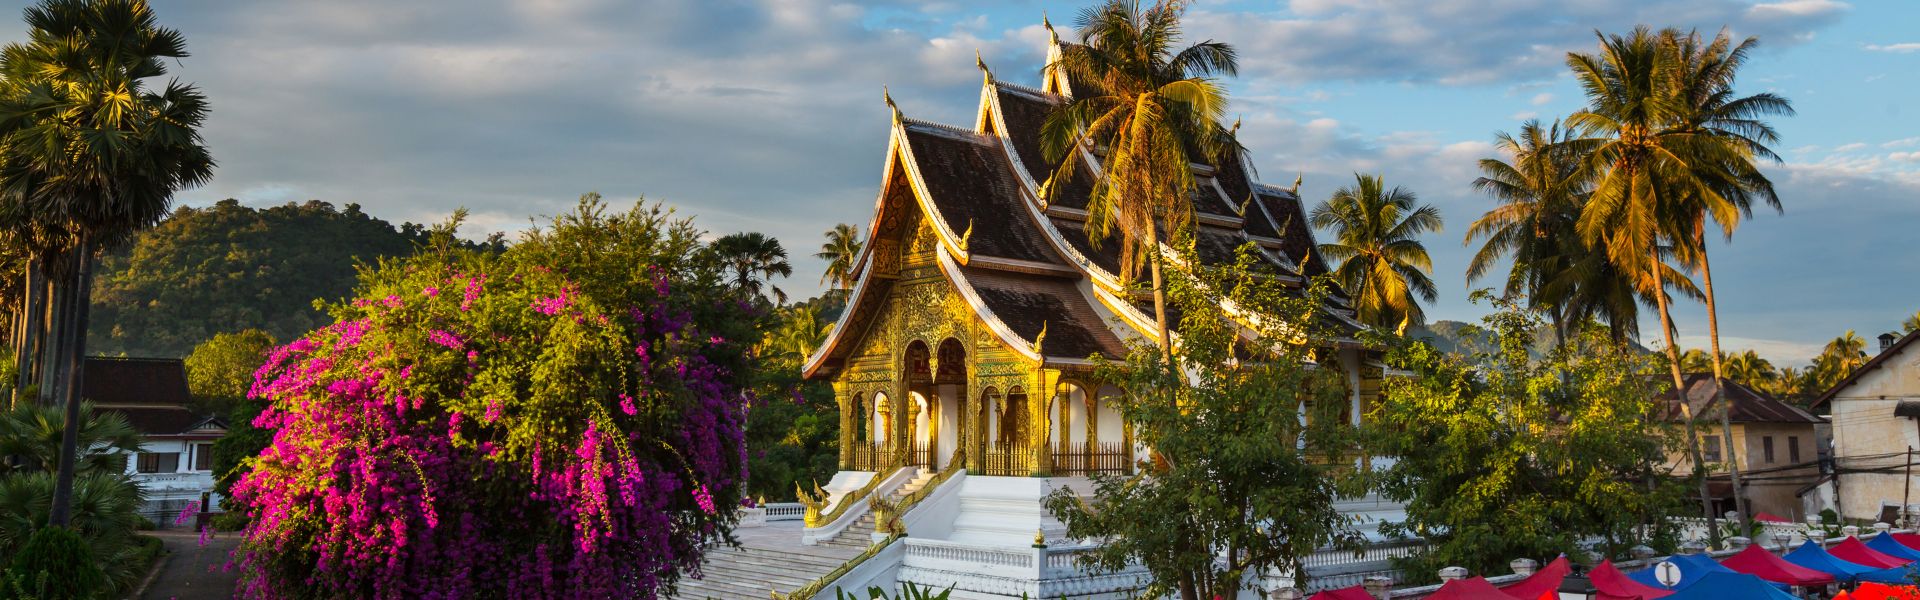 Tour clásico por Laos 4 días